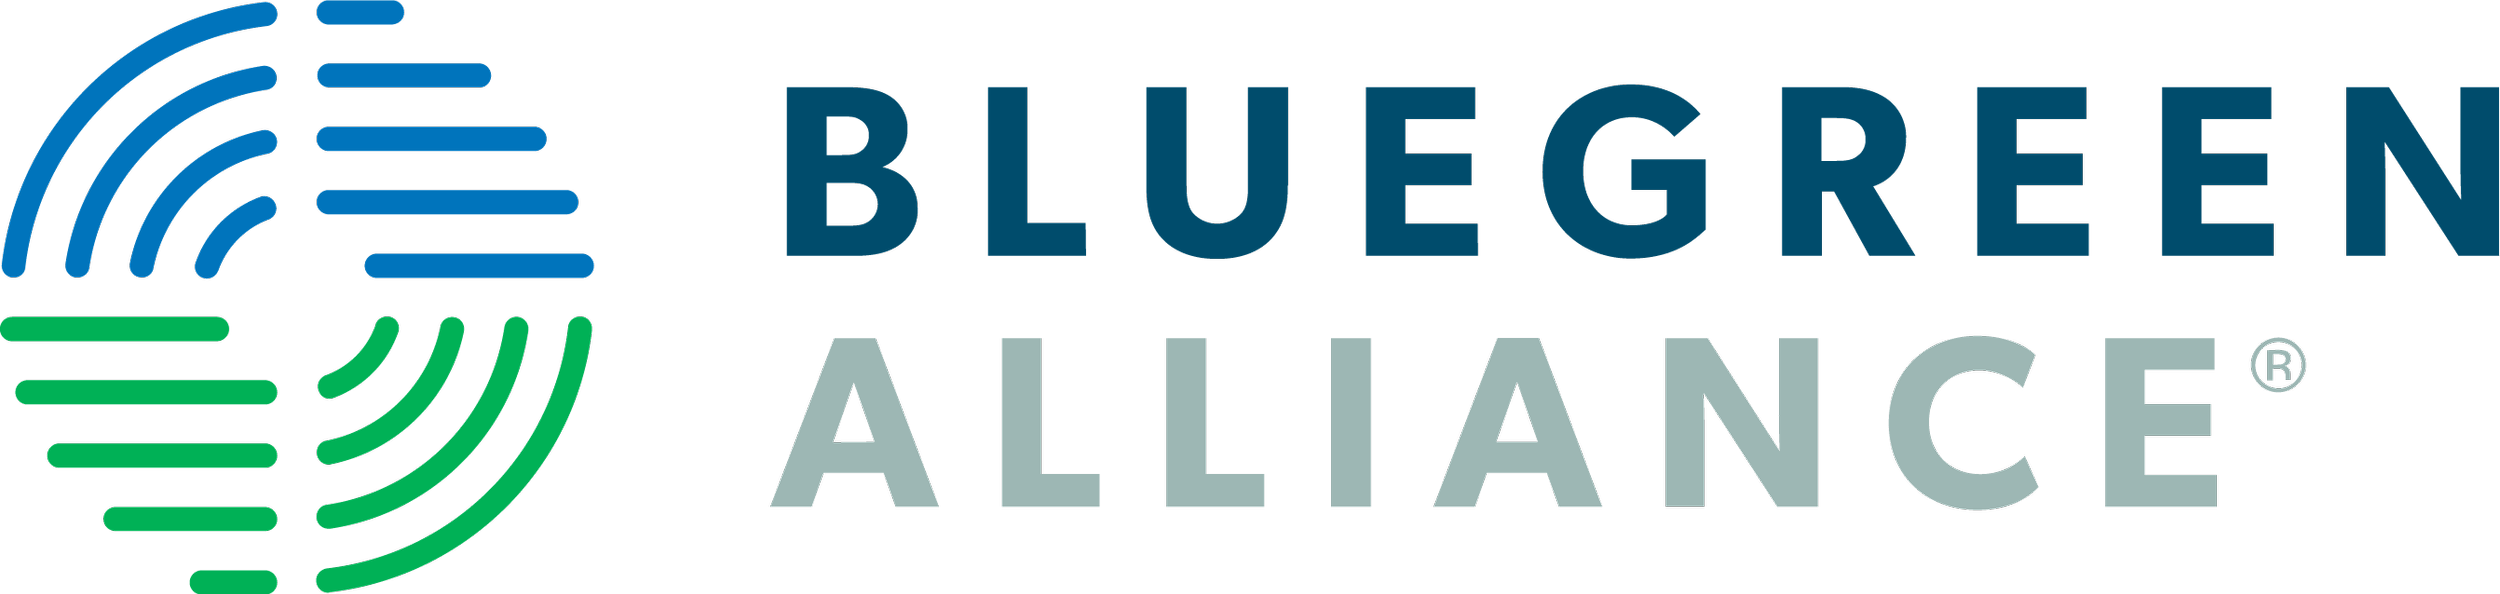 BlueGreen Alliance.png